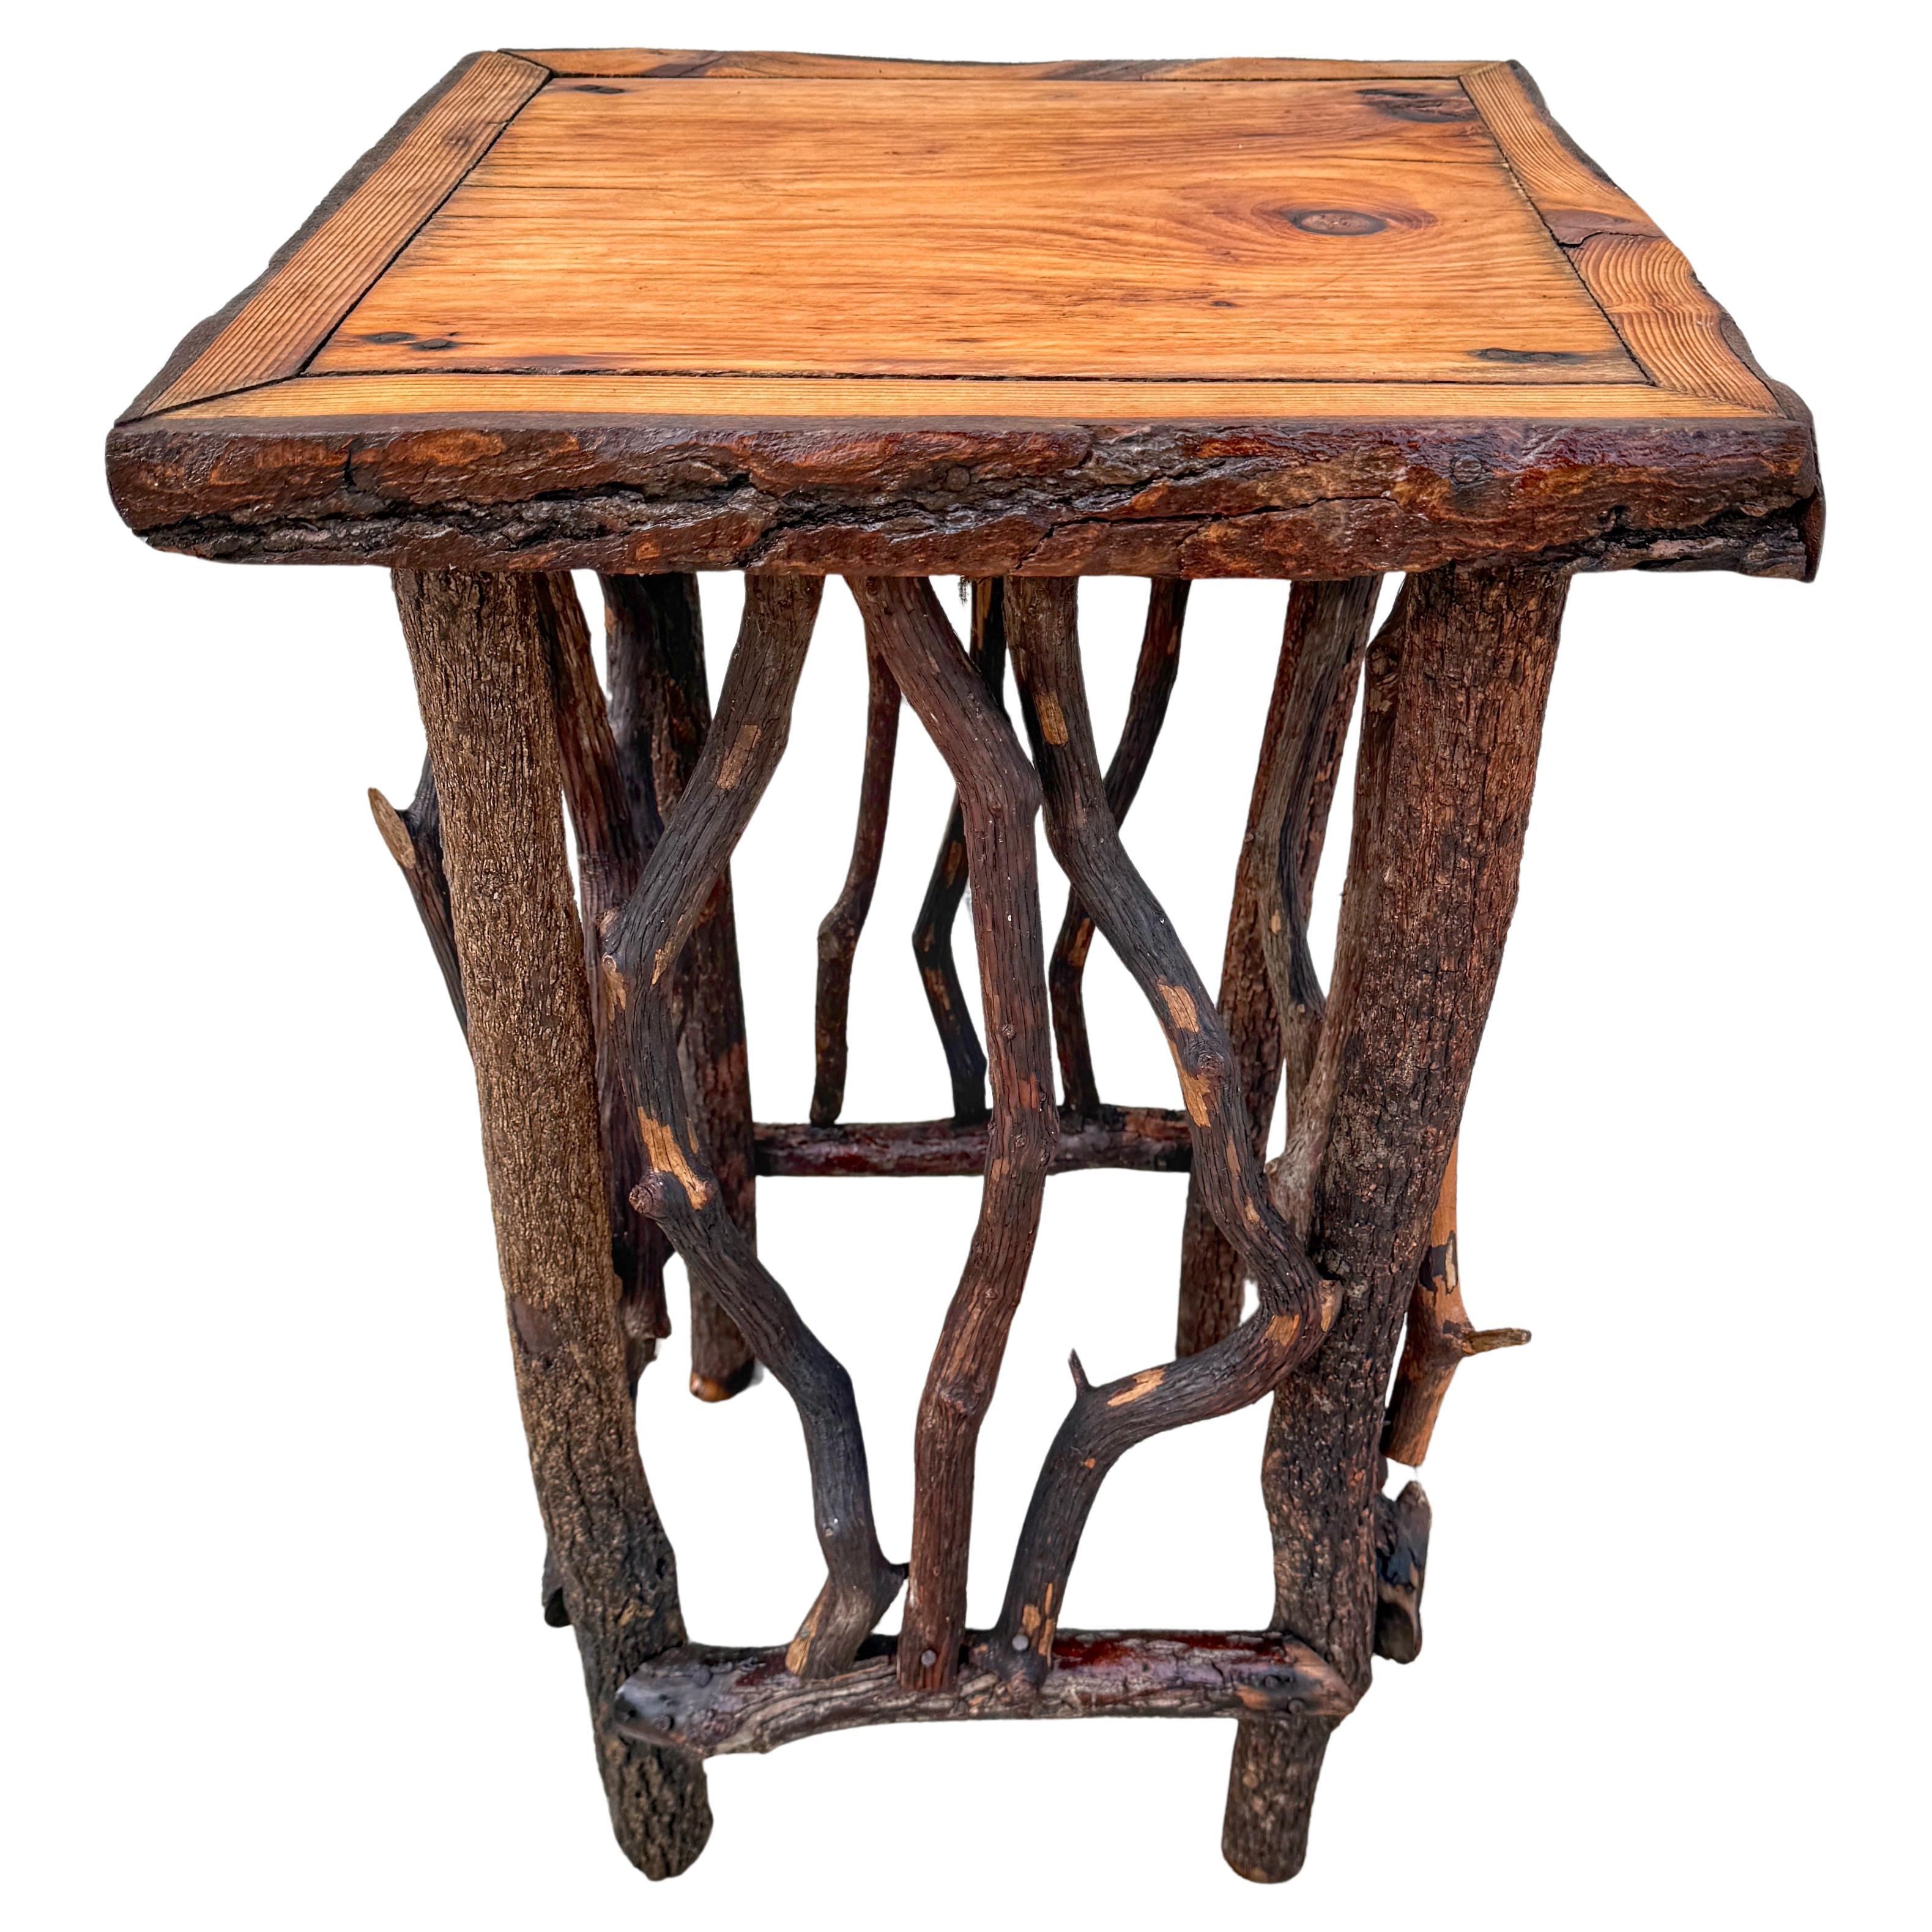 Vintage Adirondack Log & Twig Table/ Pedestal with Pine Top